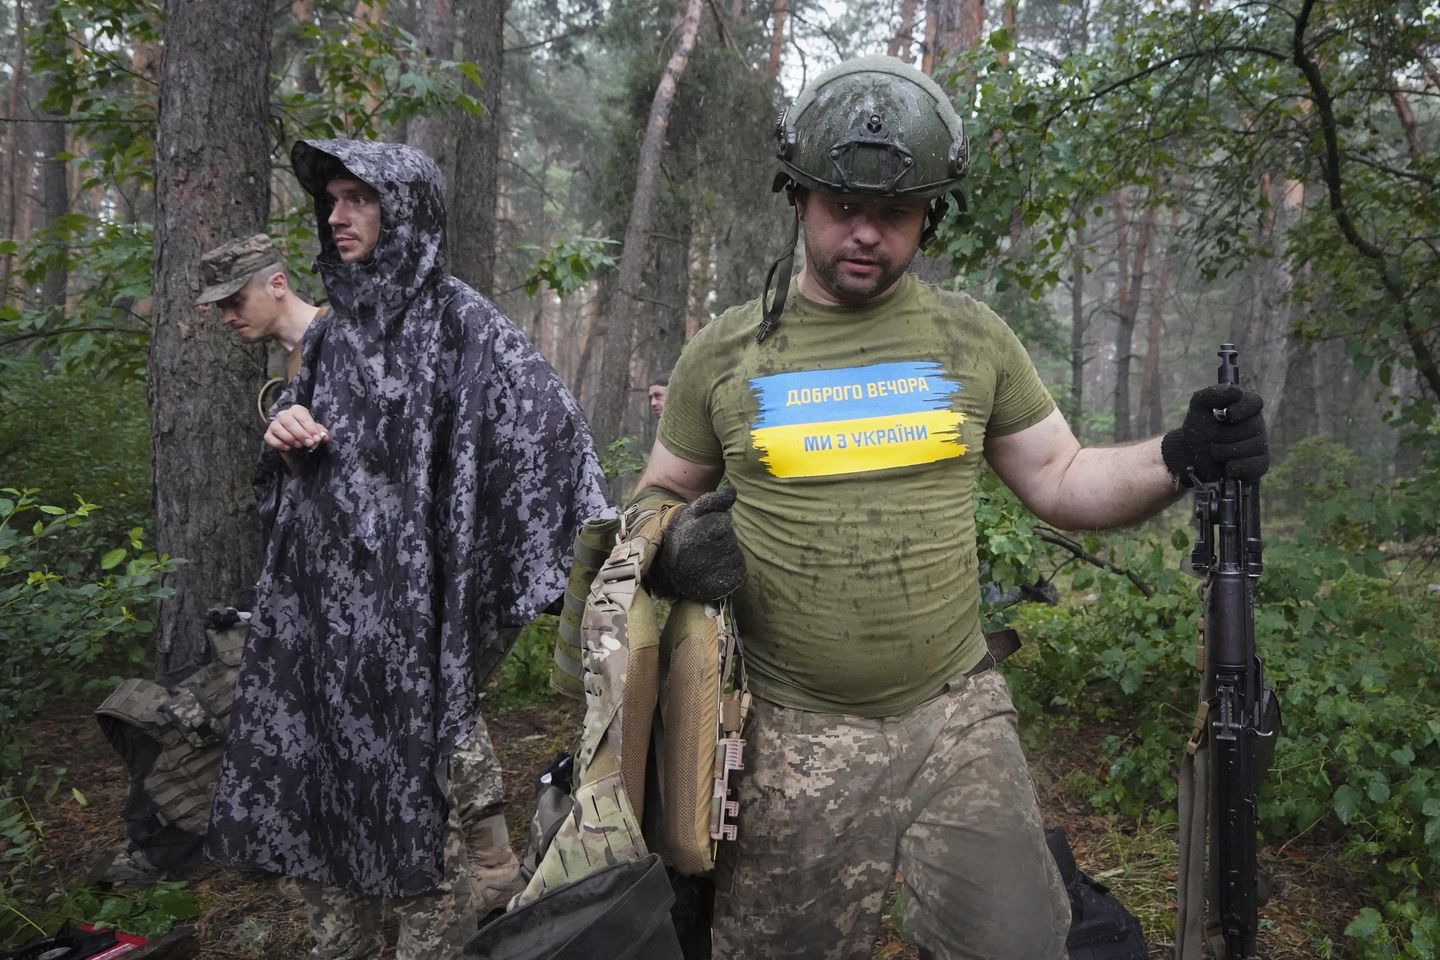 Rusya isyancıların iddia ettiği bölgeyi pound ediyor, Ukrayna geri itiyor